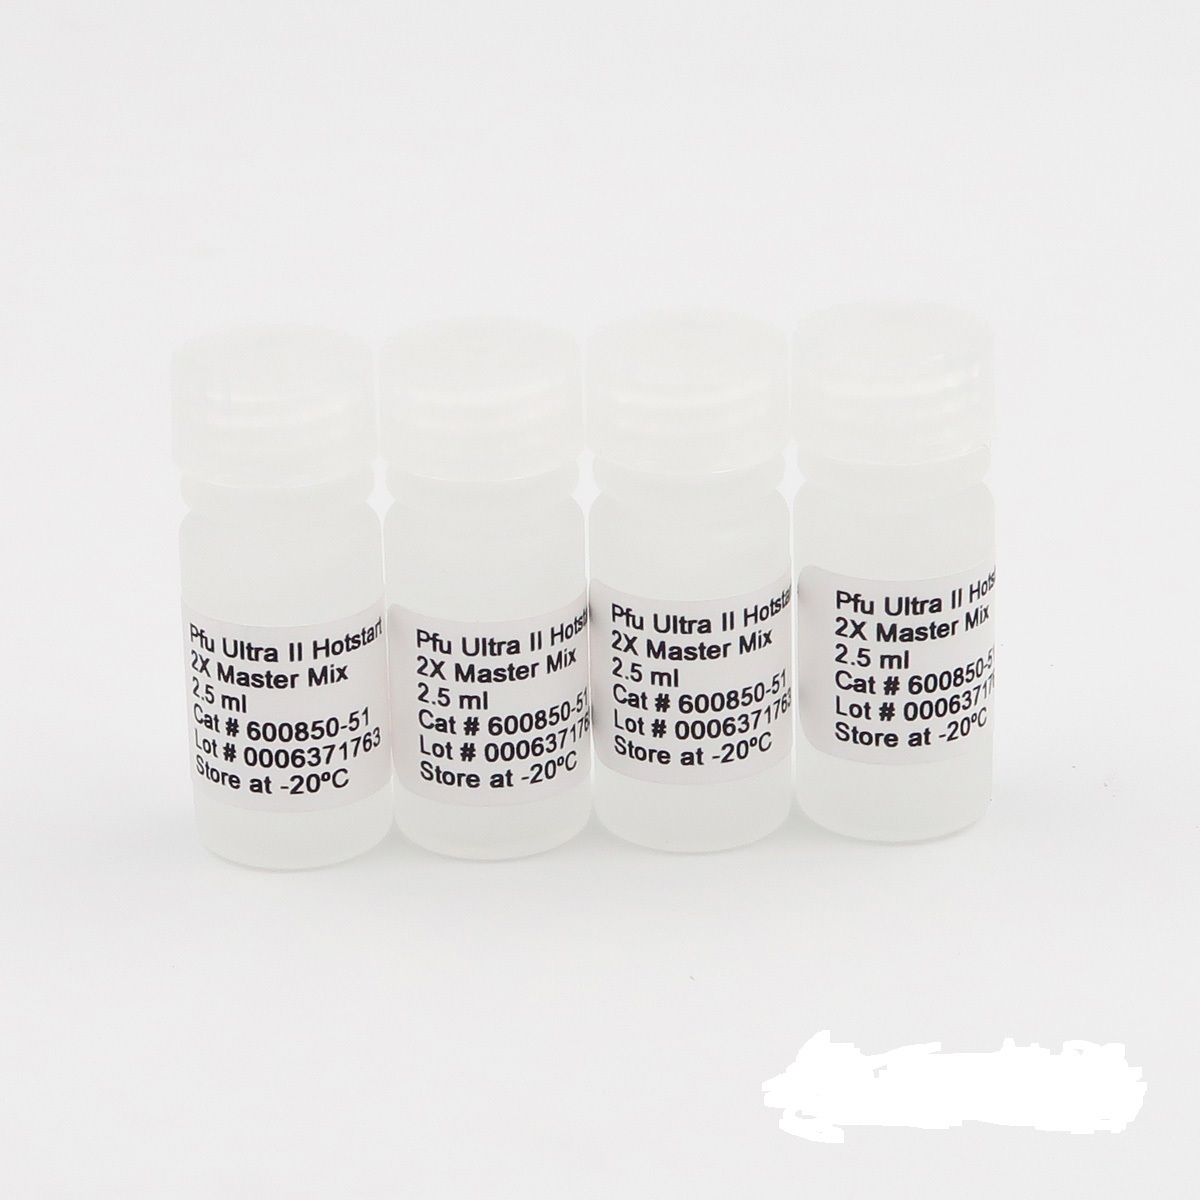 侵入性丝囊霉菌染料法荧光定量PCR试剂盒